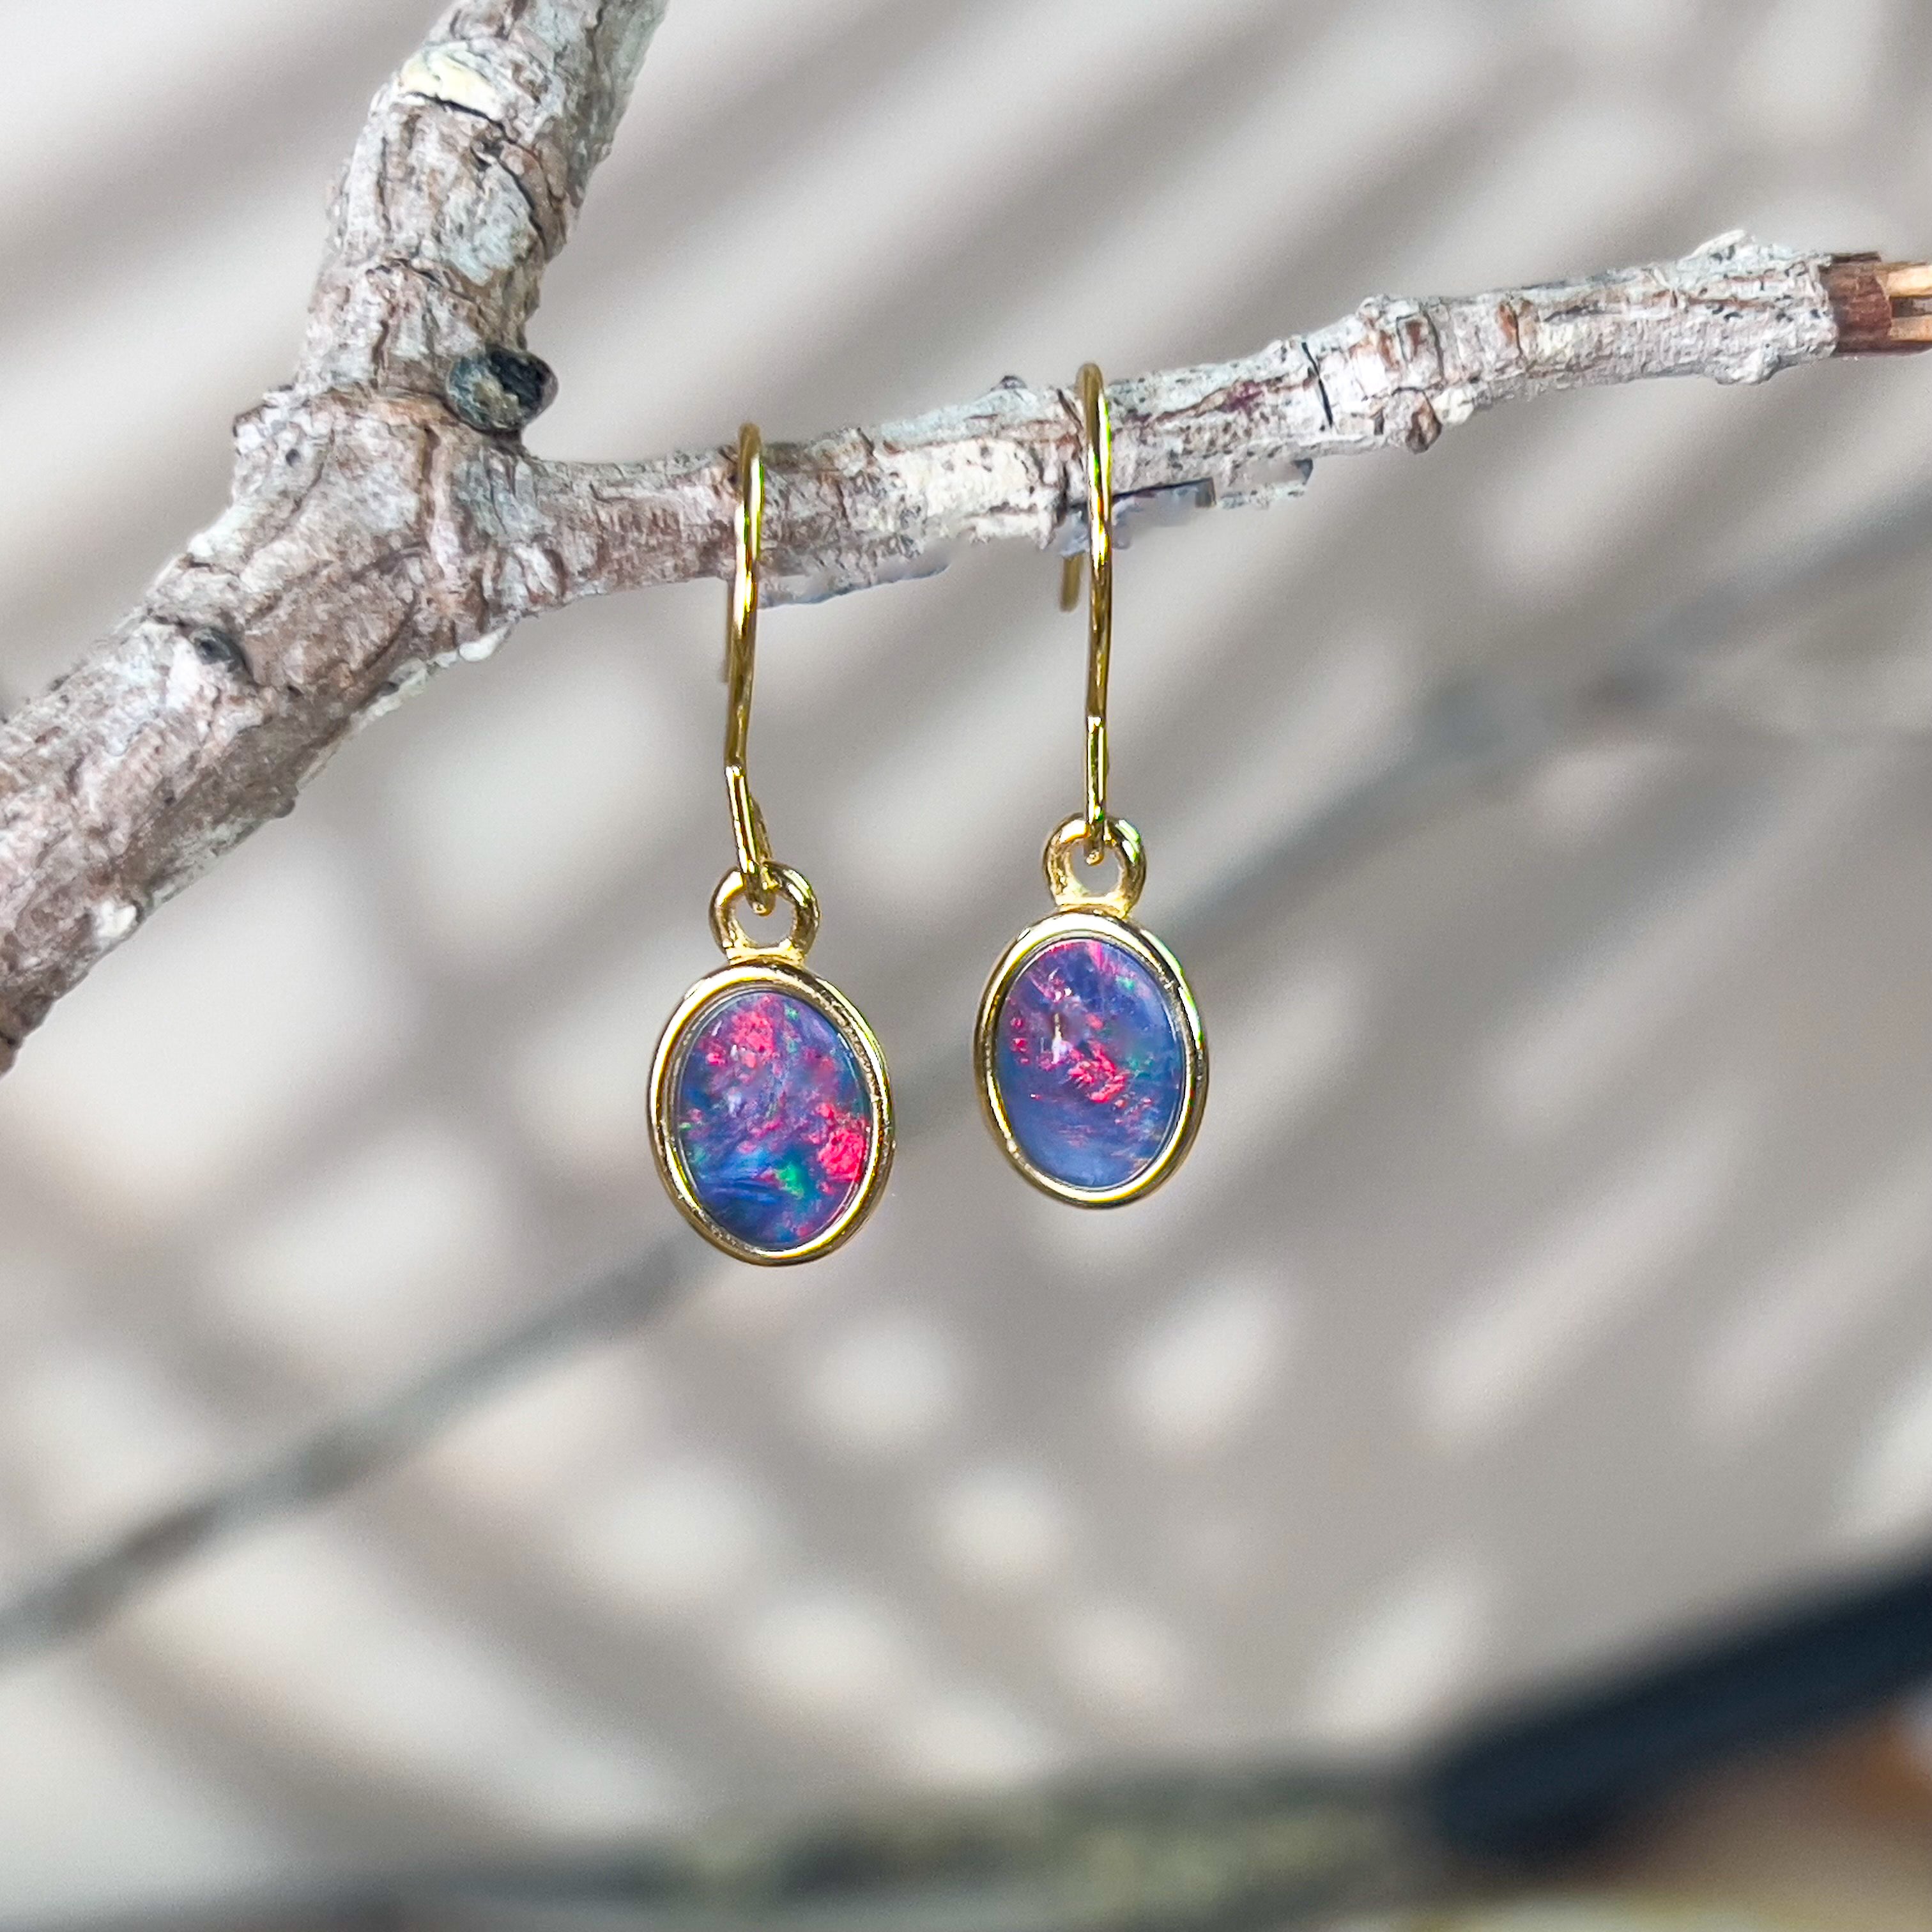 Gold plated dangling Opal triplet oval earring hooks - Masterpiece Jewellery Opal & Gems Sydney Australia | Online Shop